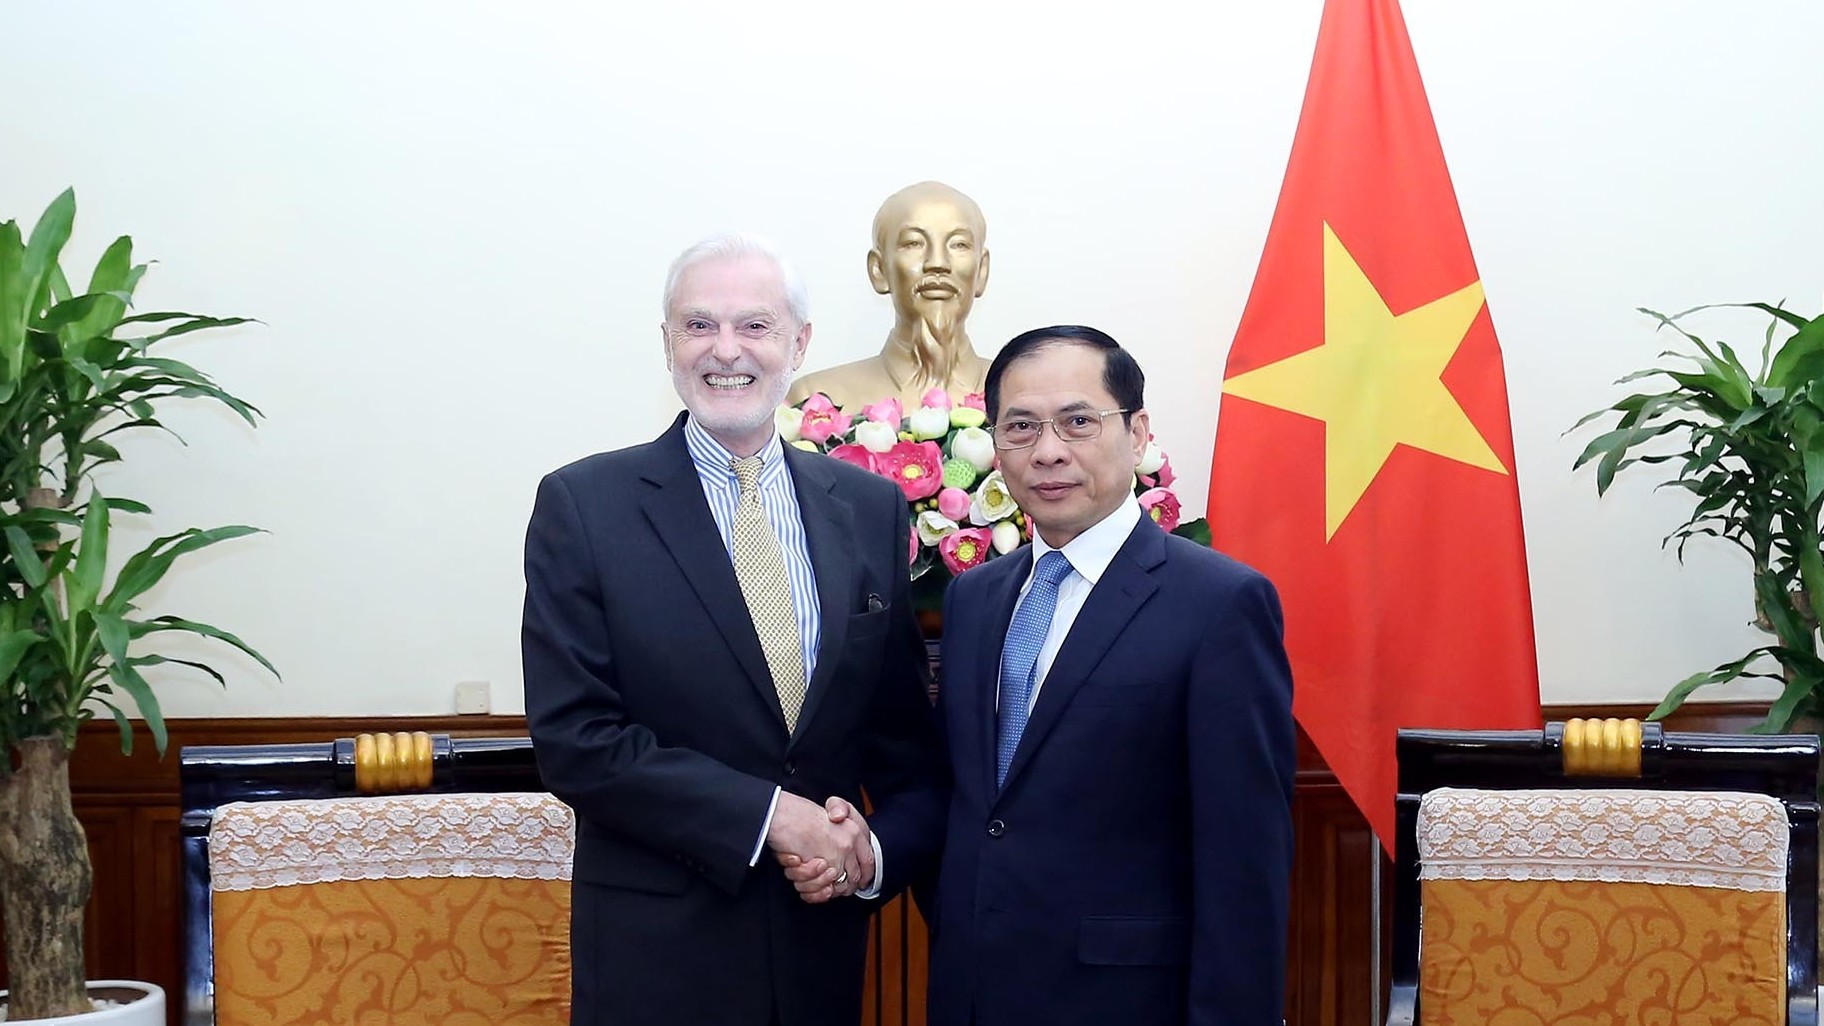 Bộ trưởng Ngoại giao Bùi Thanh Sơn tiếp Đại sứ Bồ Đào Nha chào từ biệt